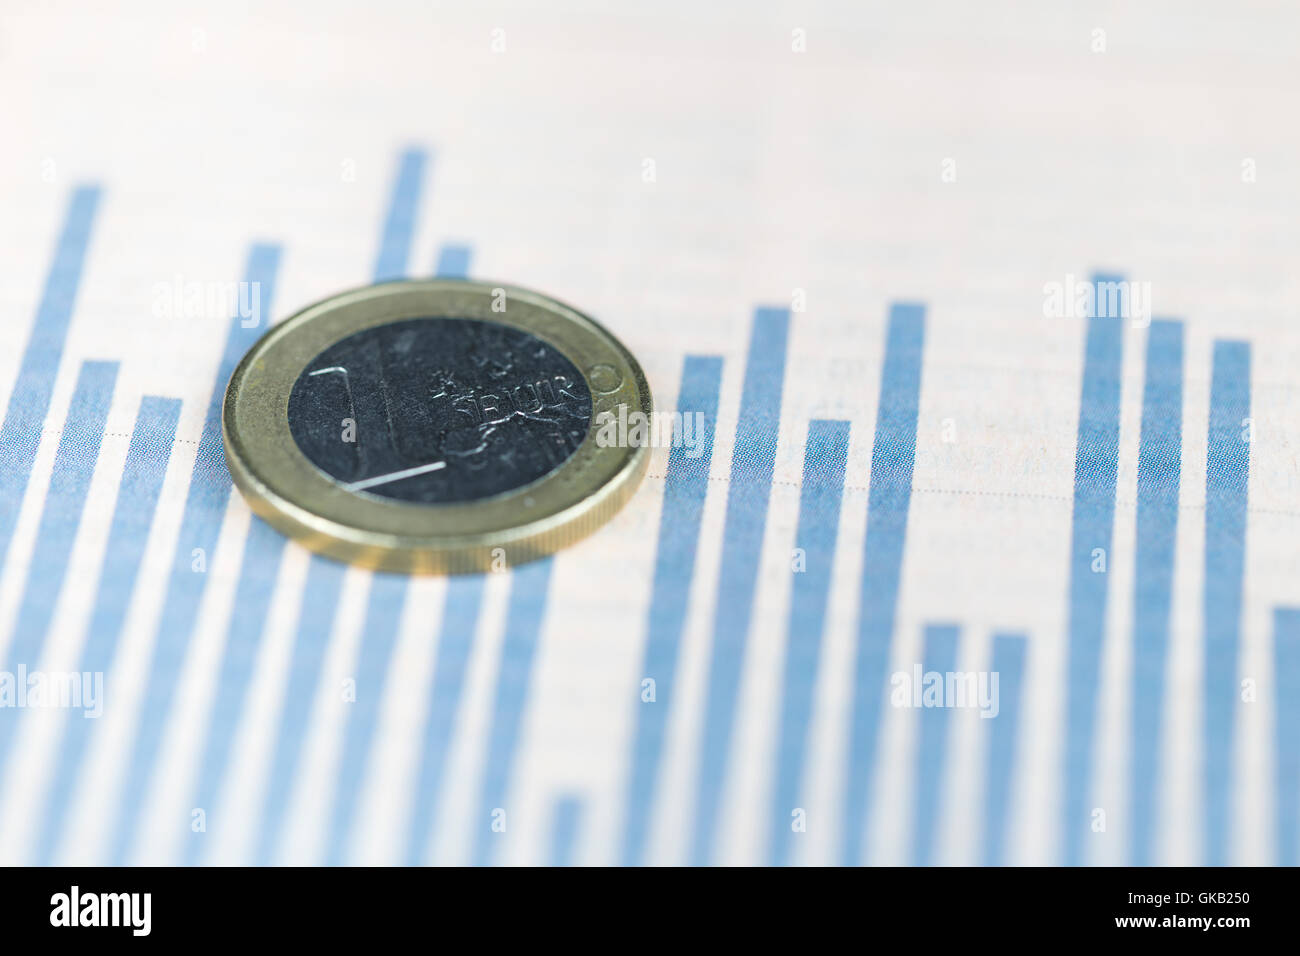 One euro coin over financial graph, economy concept Stock Photo